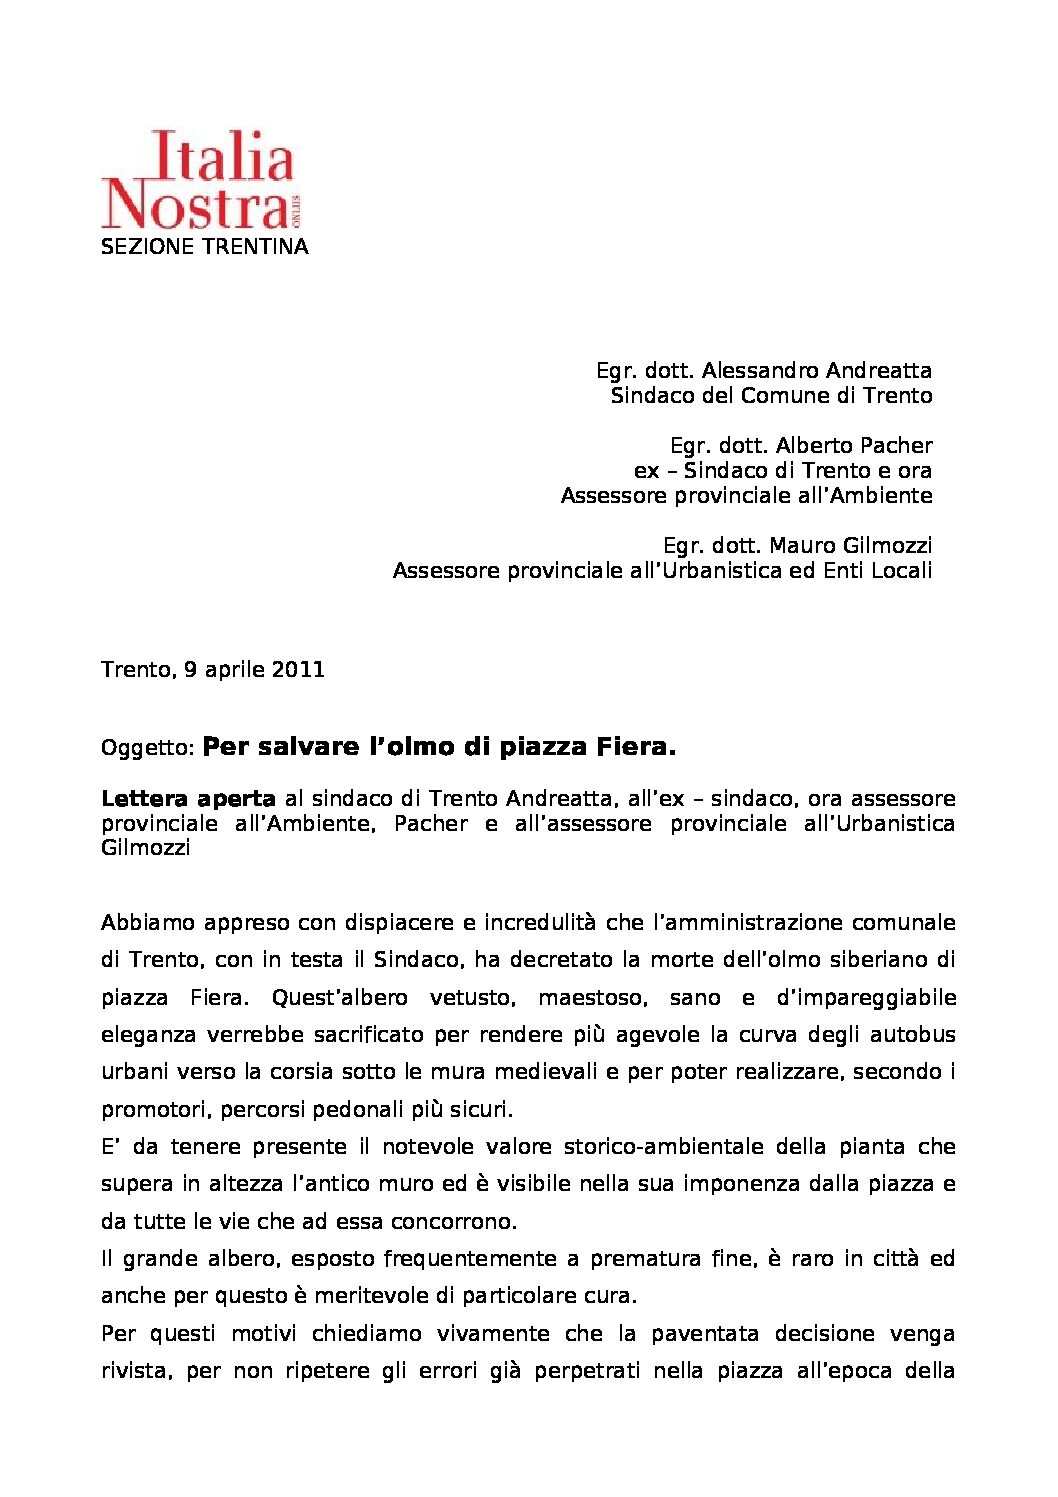 Per salvare l’olmo di Piazza Fiera – lettera aperta di ITALIA NOSTRA